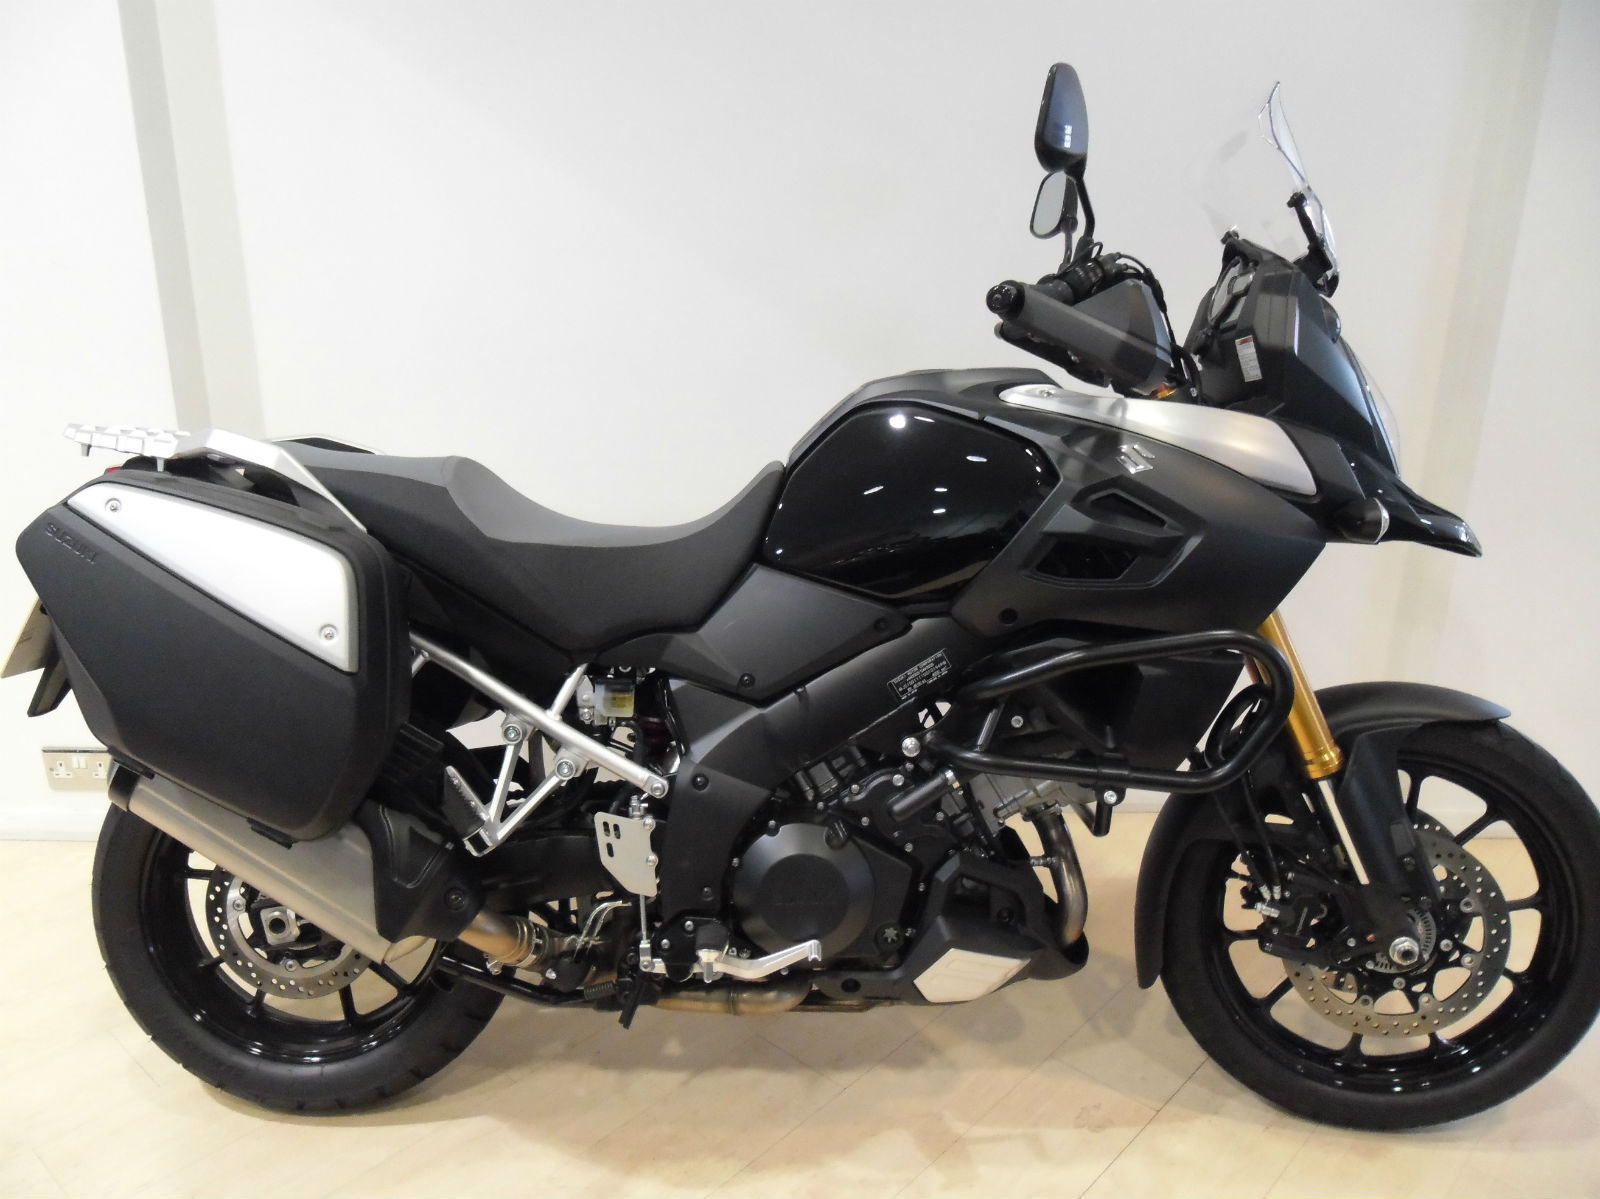 Suzuki DL 1000 VStrom 2014 1000cc Adventure Motorcycle